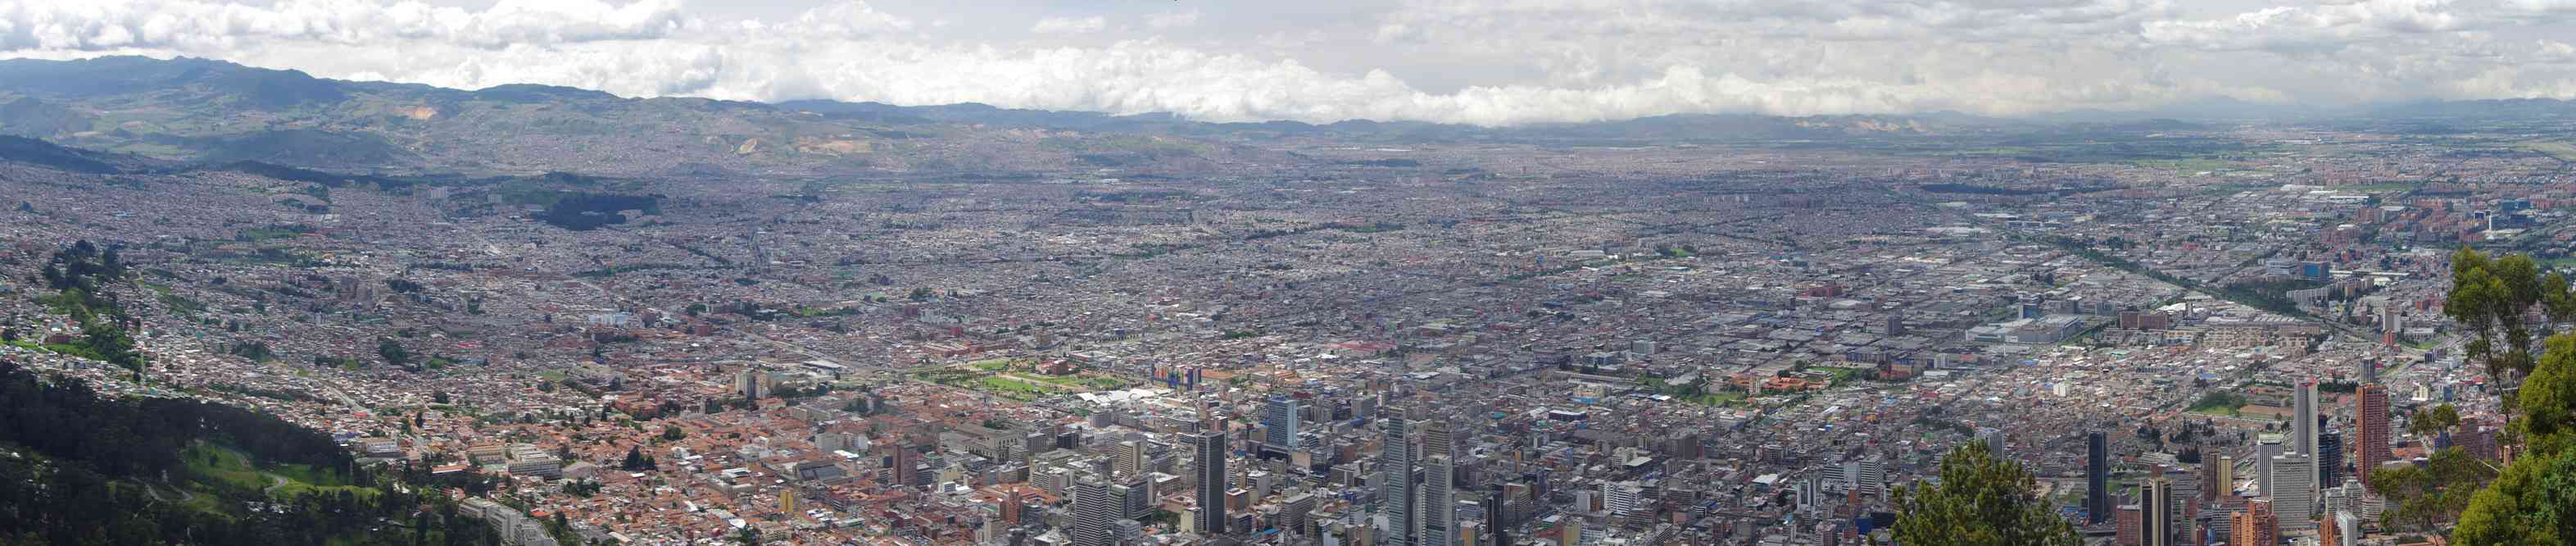 Bogotá, vue depuis la colline de Monserrate, le 23 janvier 2018